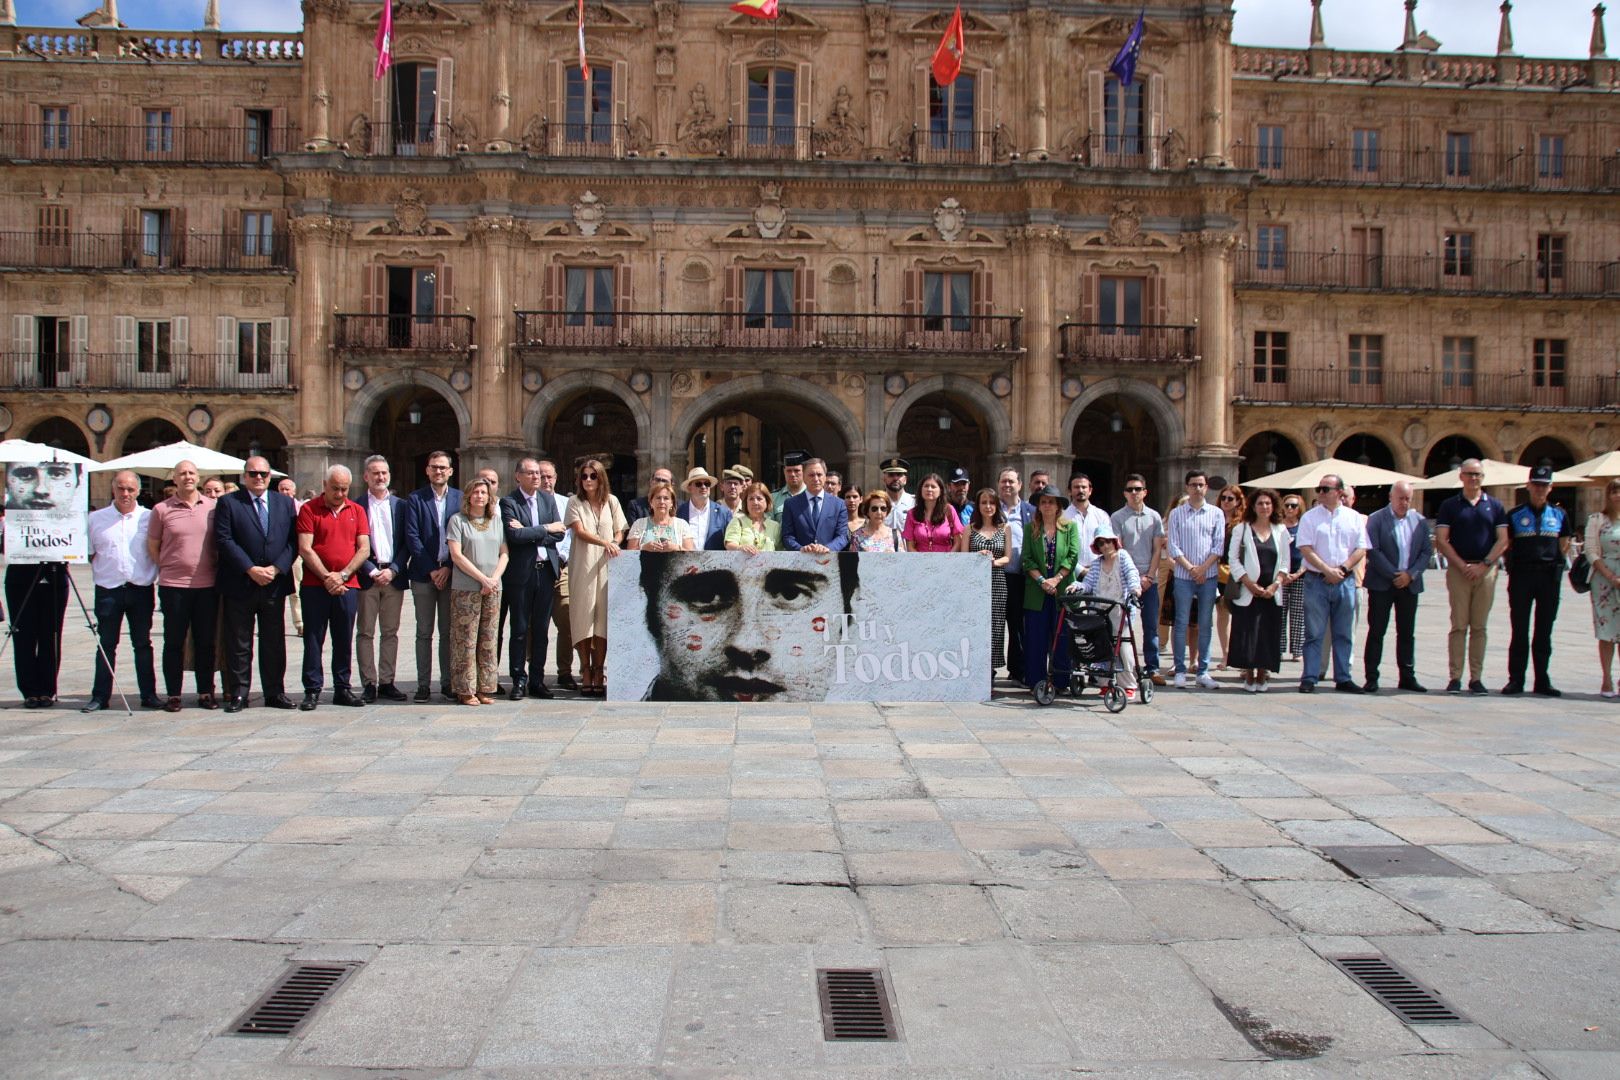 XXVII Aniversario del secuestro y asesinato de Miguel Ángel Blanco, bajo el lema ‘Tú y todos’